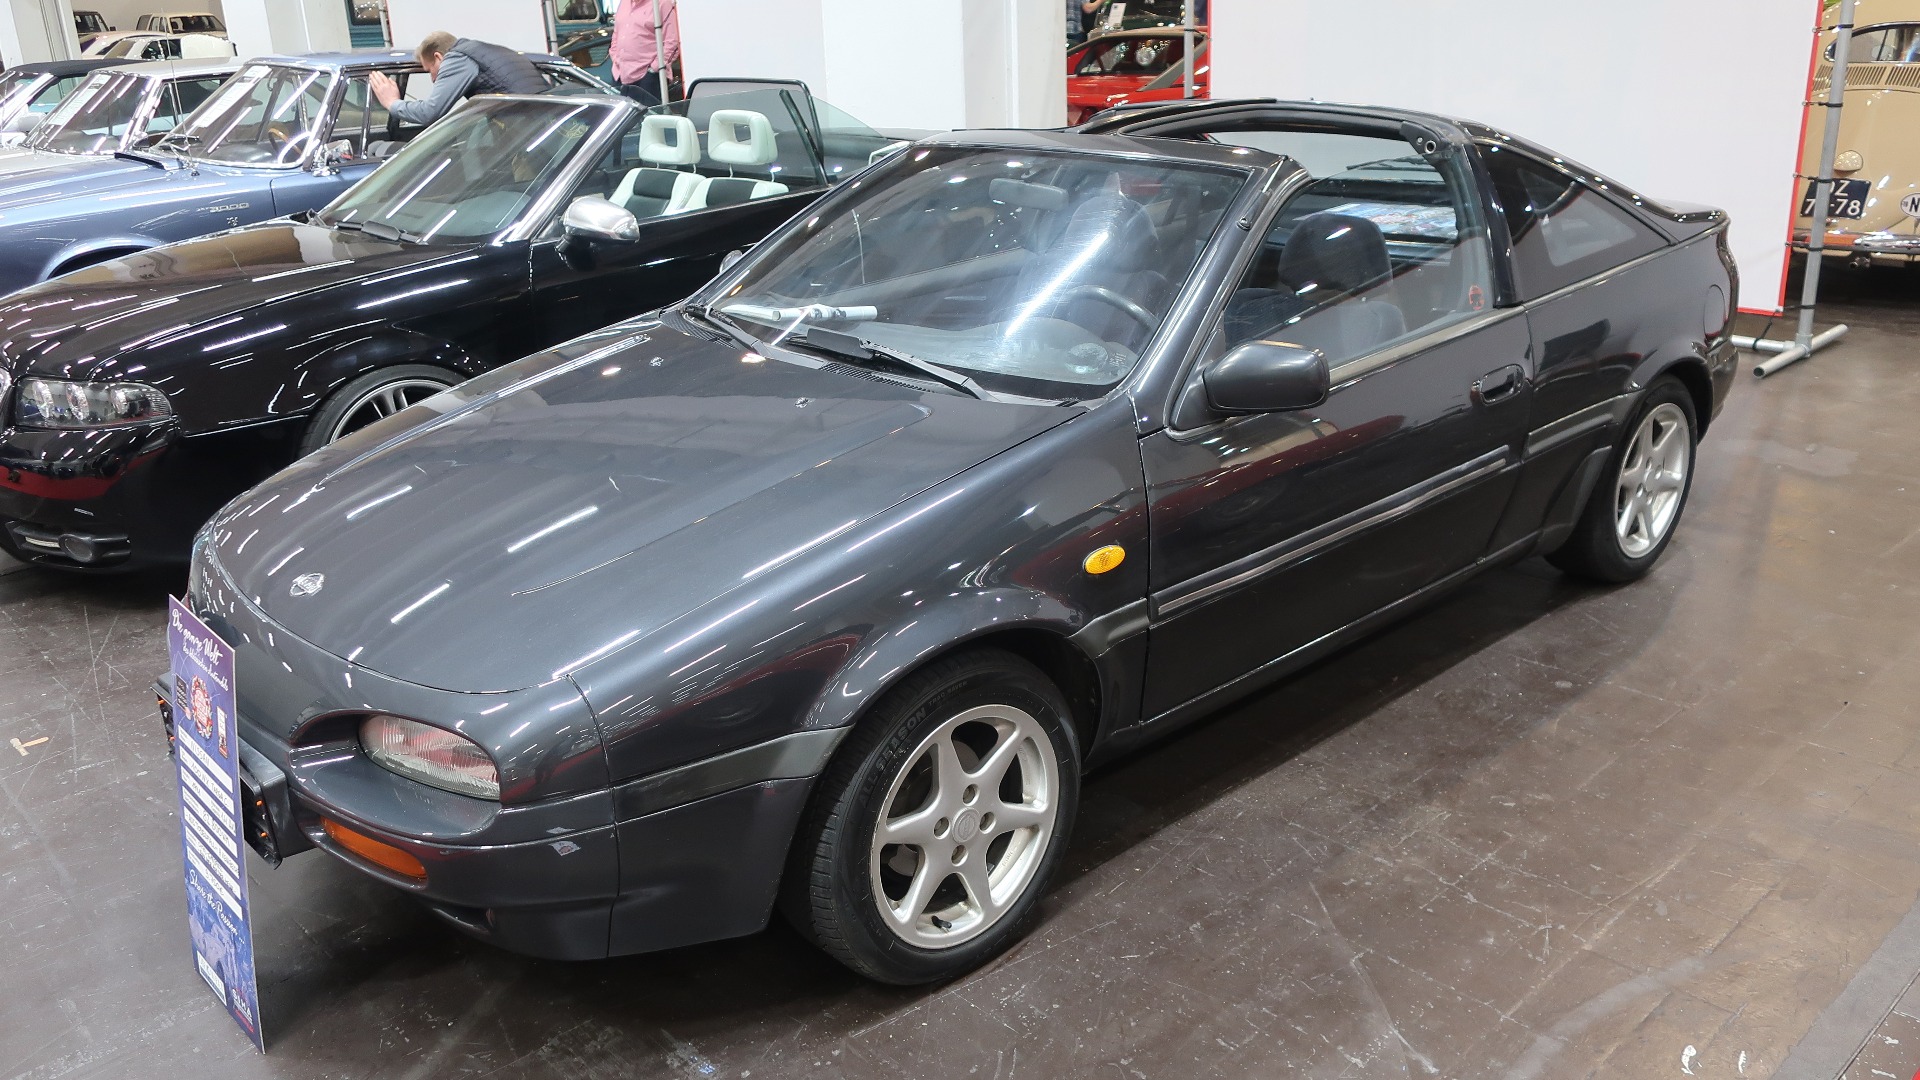 Det er fortsatt mulig å finne gøyale biler til under 10.000 Euro i god tilstand. Her en 1991 Nissan 100 NX Targa som stod til salgs for 9750 Euro.